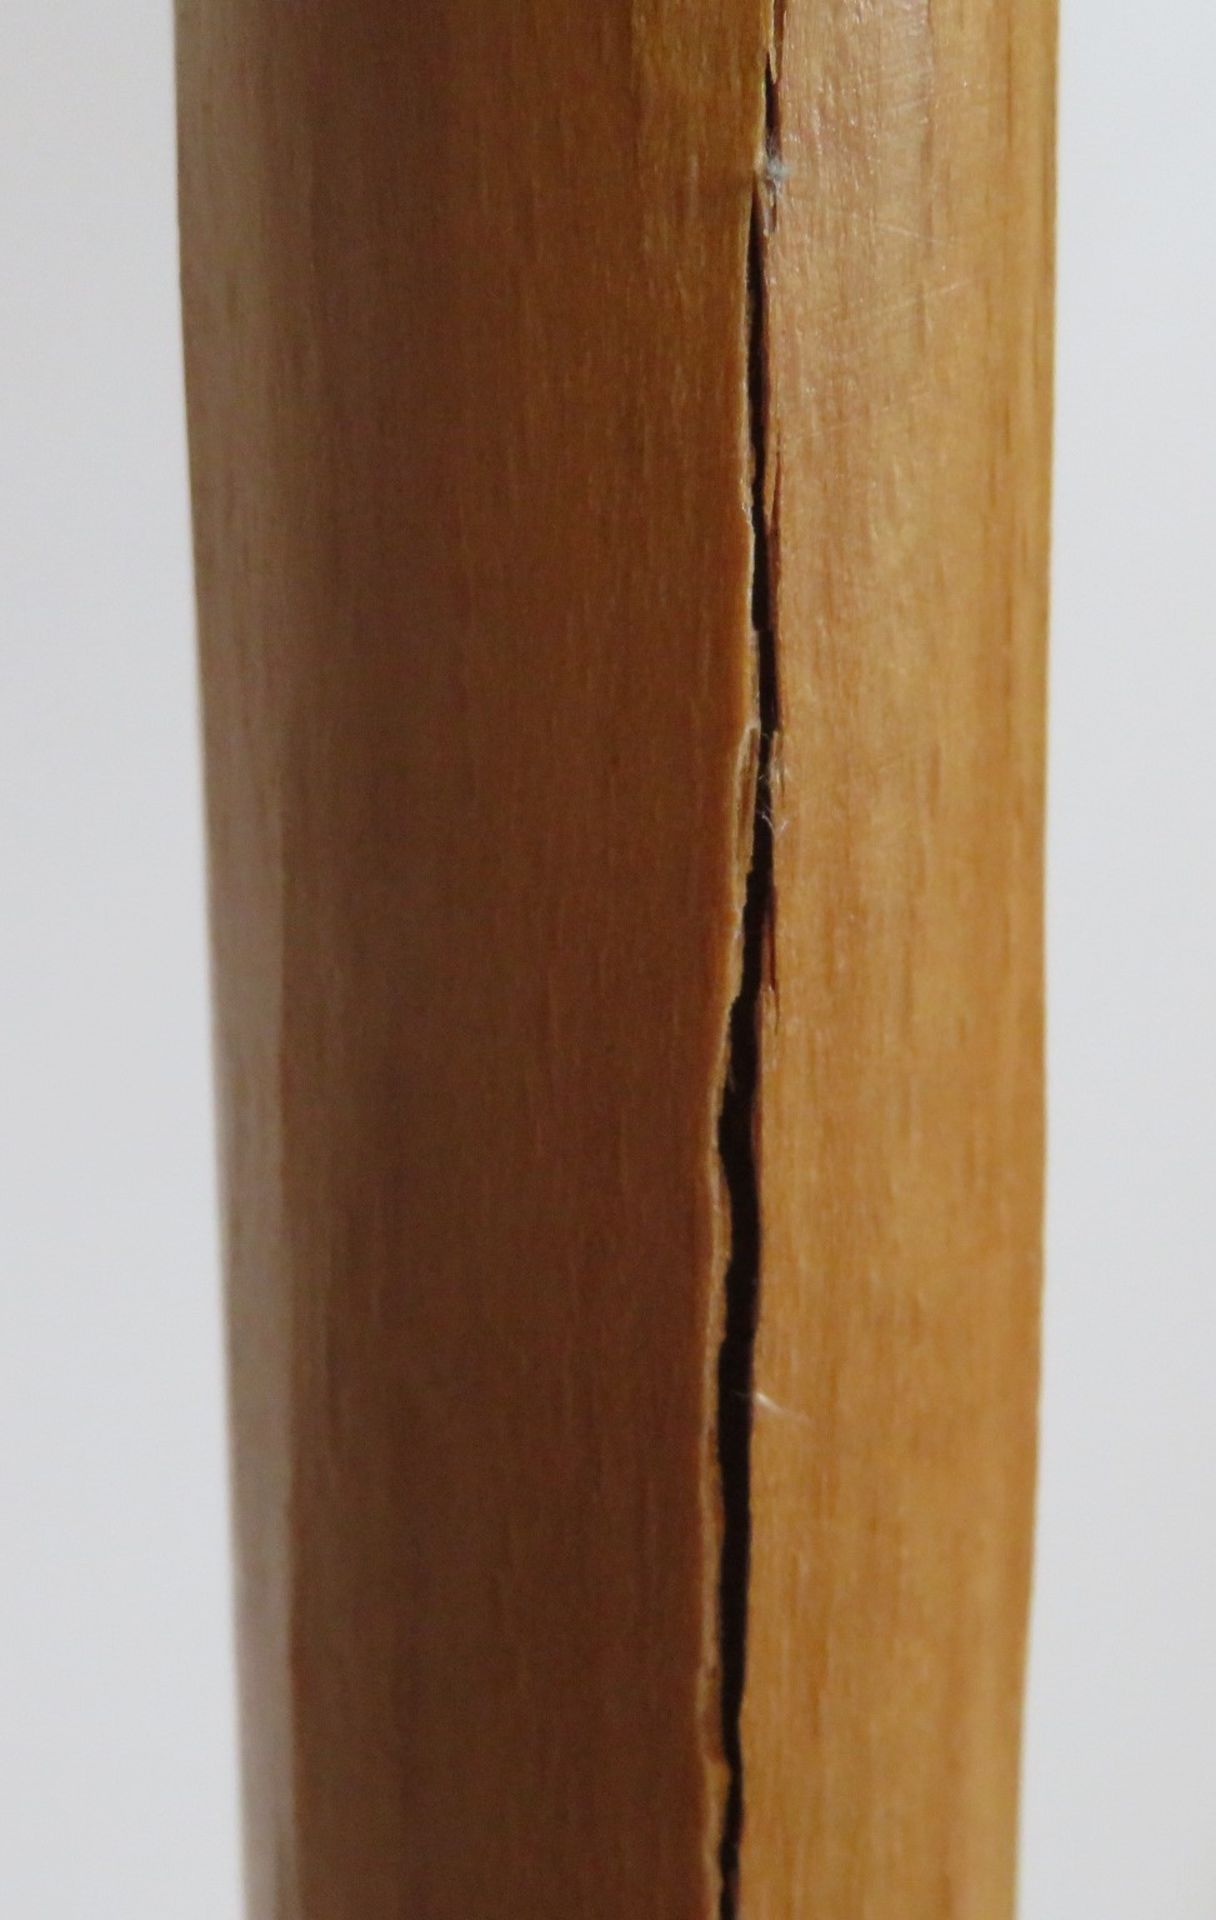 Designer Stehlampe, furnierter Standfuß, h 144 cm, d 56 cm. - Image 2 of 2